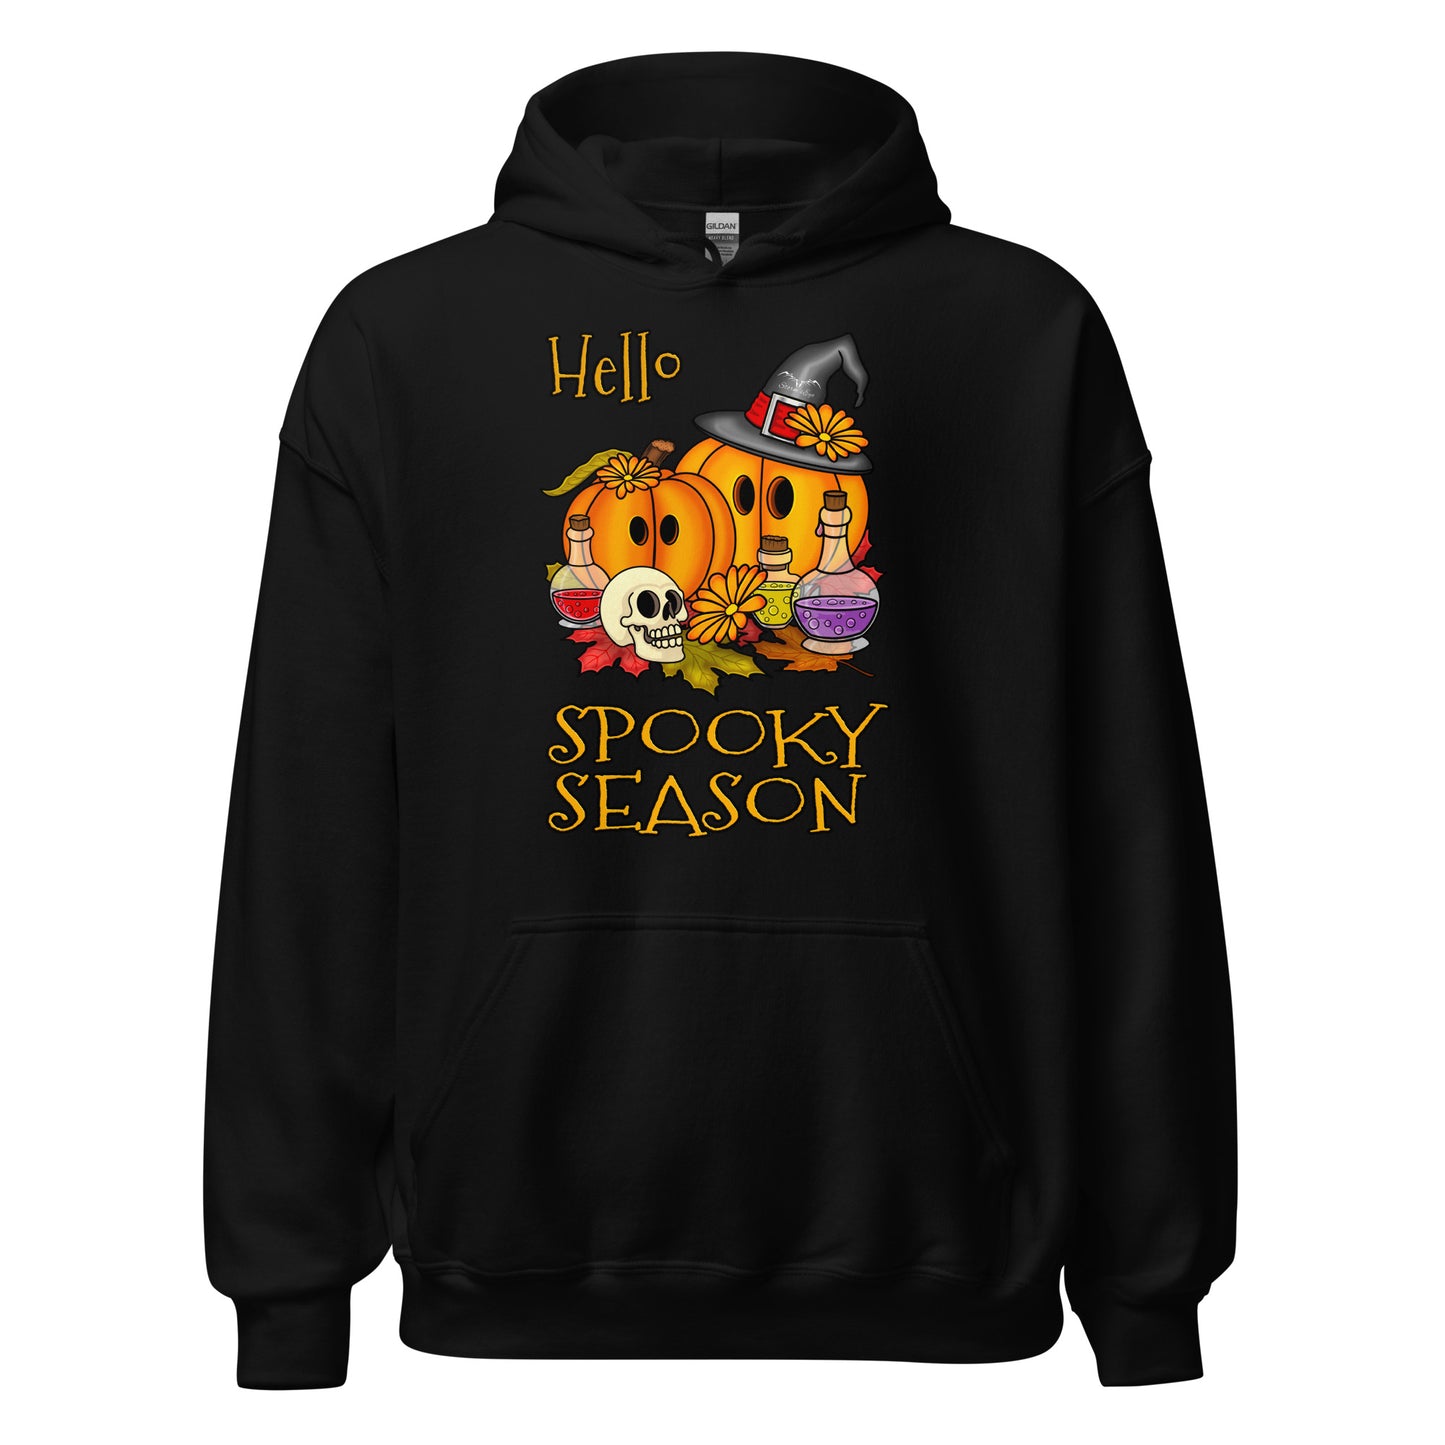 stormseye design hello spooky season hoodie flat view black